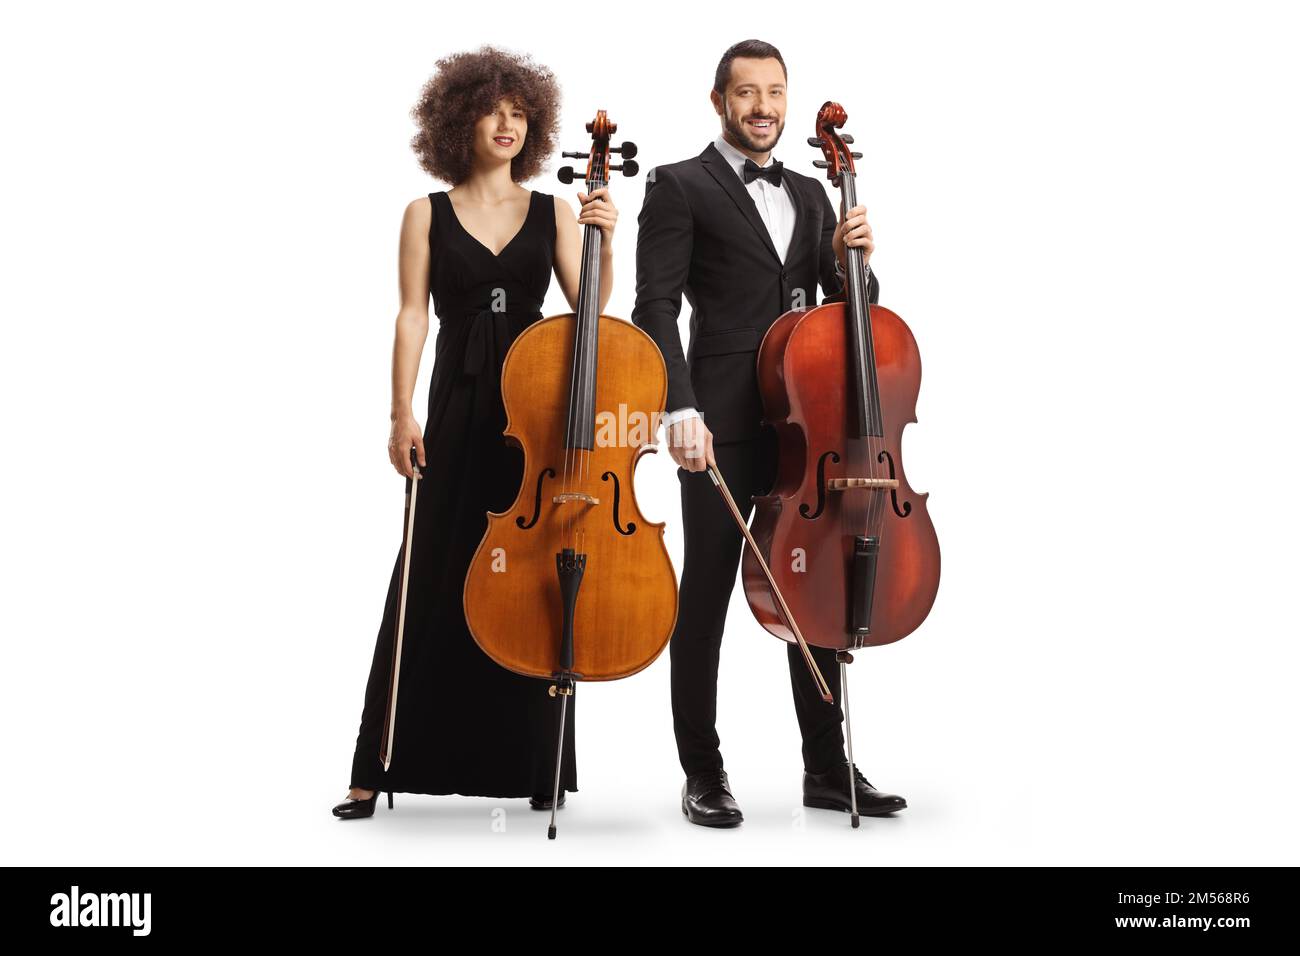 Männliche und weibliche Künstler, die mit Cellos auf weißem Hintergrund posieren Stockfoto